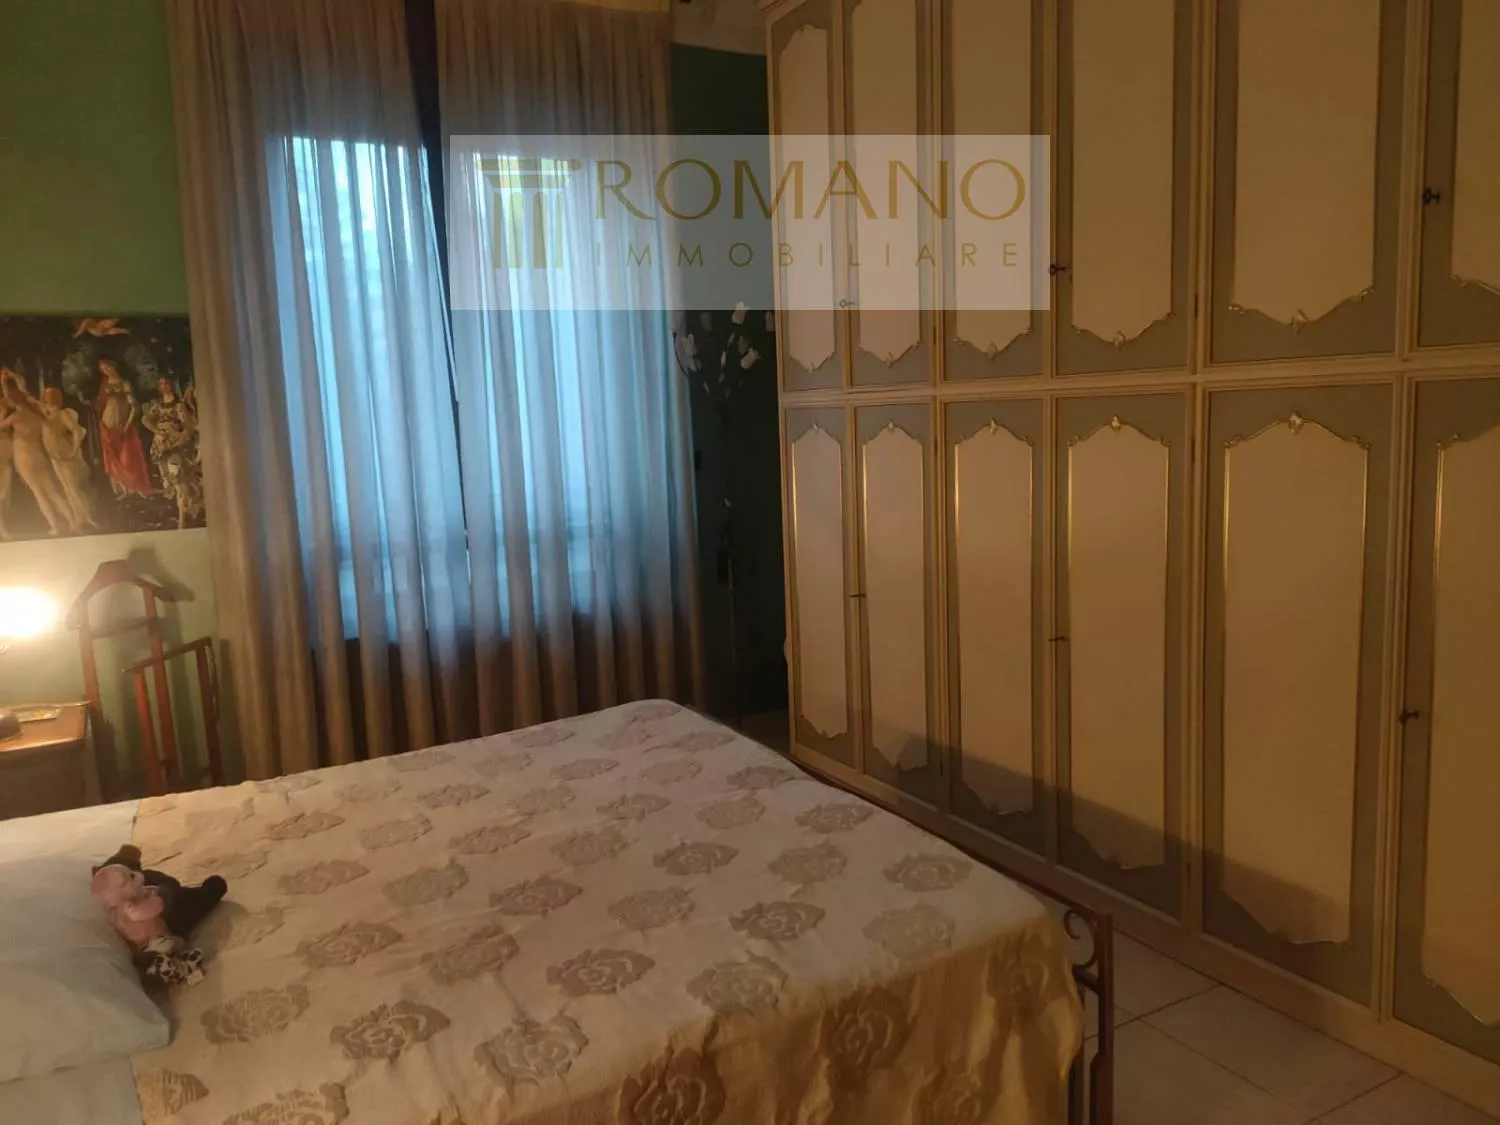 Immagine per Appartamento in vendita a Torino via Delle Glicini 25